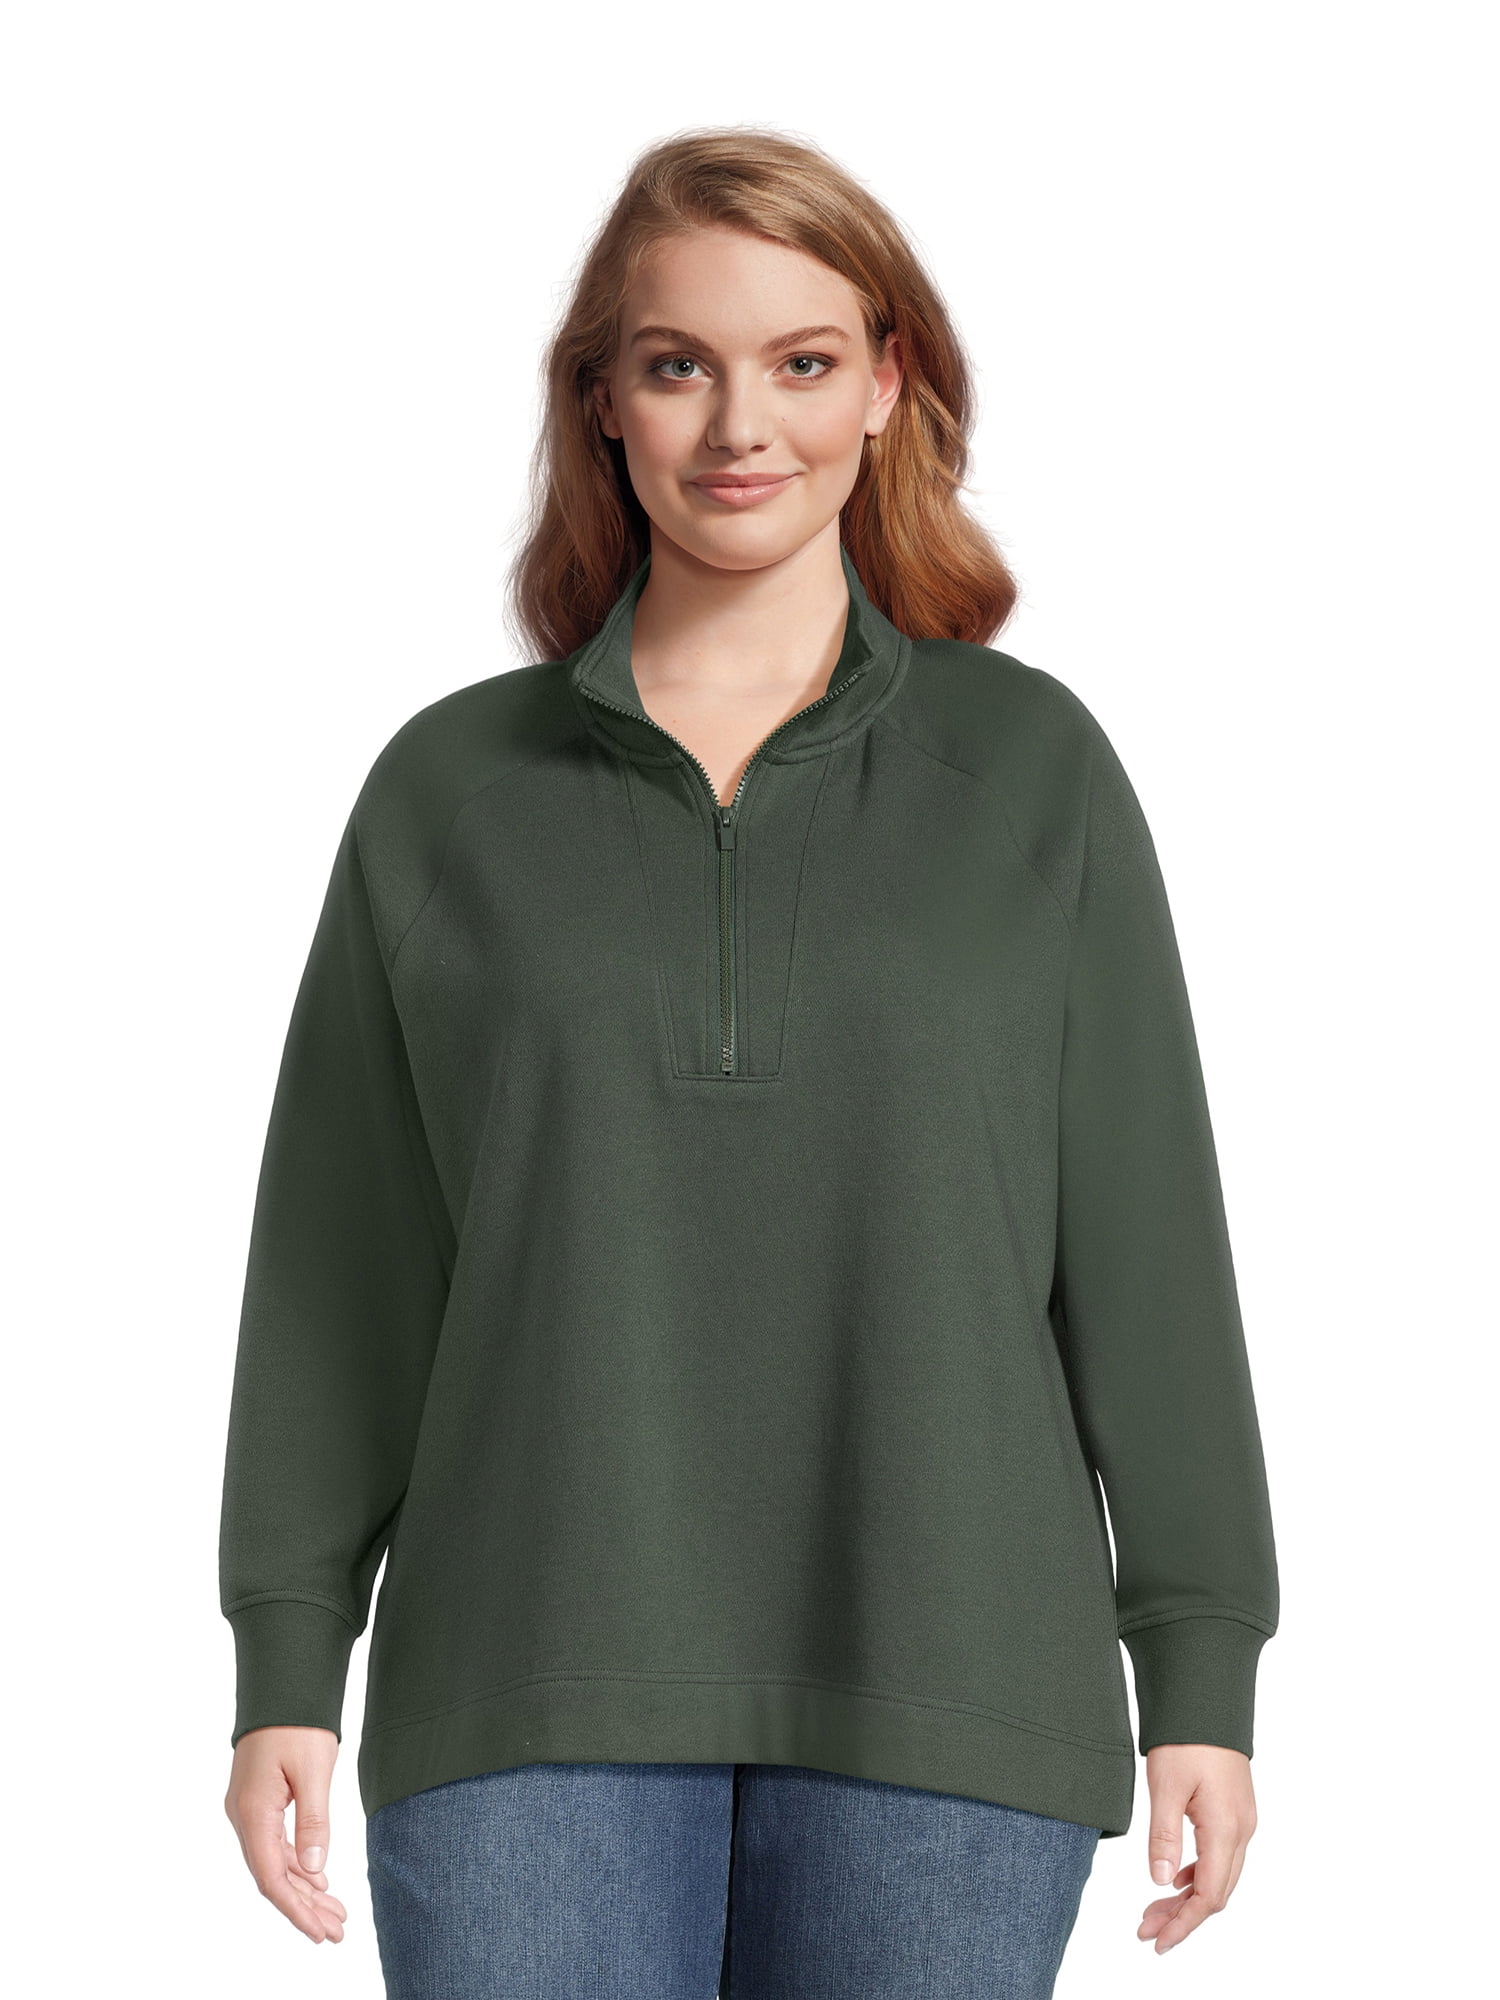 RBX Active Women's Lightweight Mock Neck Fleece 1/4 Zip Sweatshirt With  Pockets, Dark Green Texture, Small : : Clothing, Shoes &  Accessories